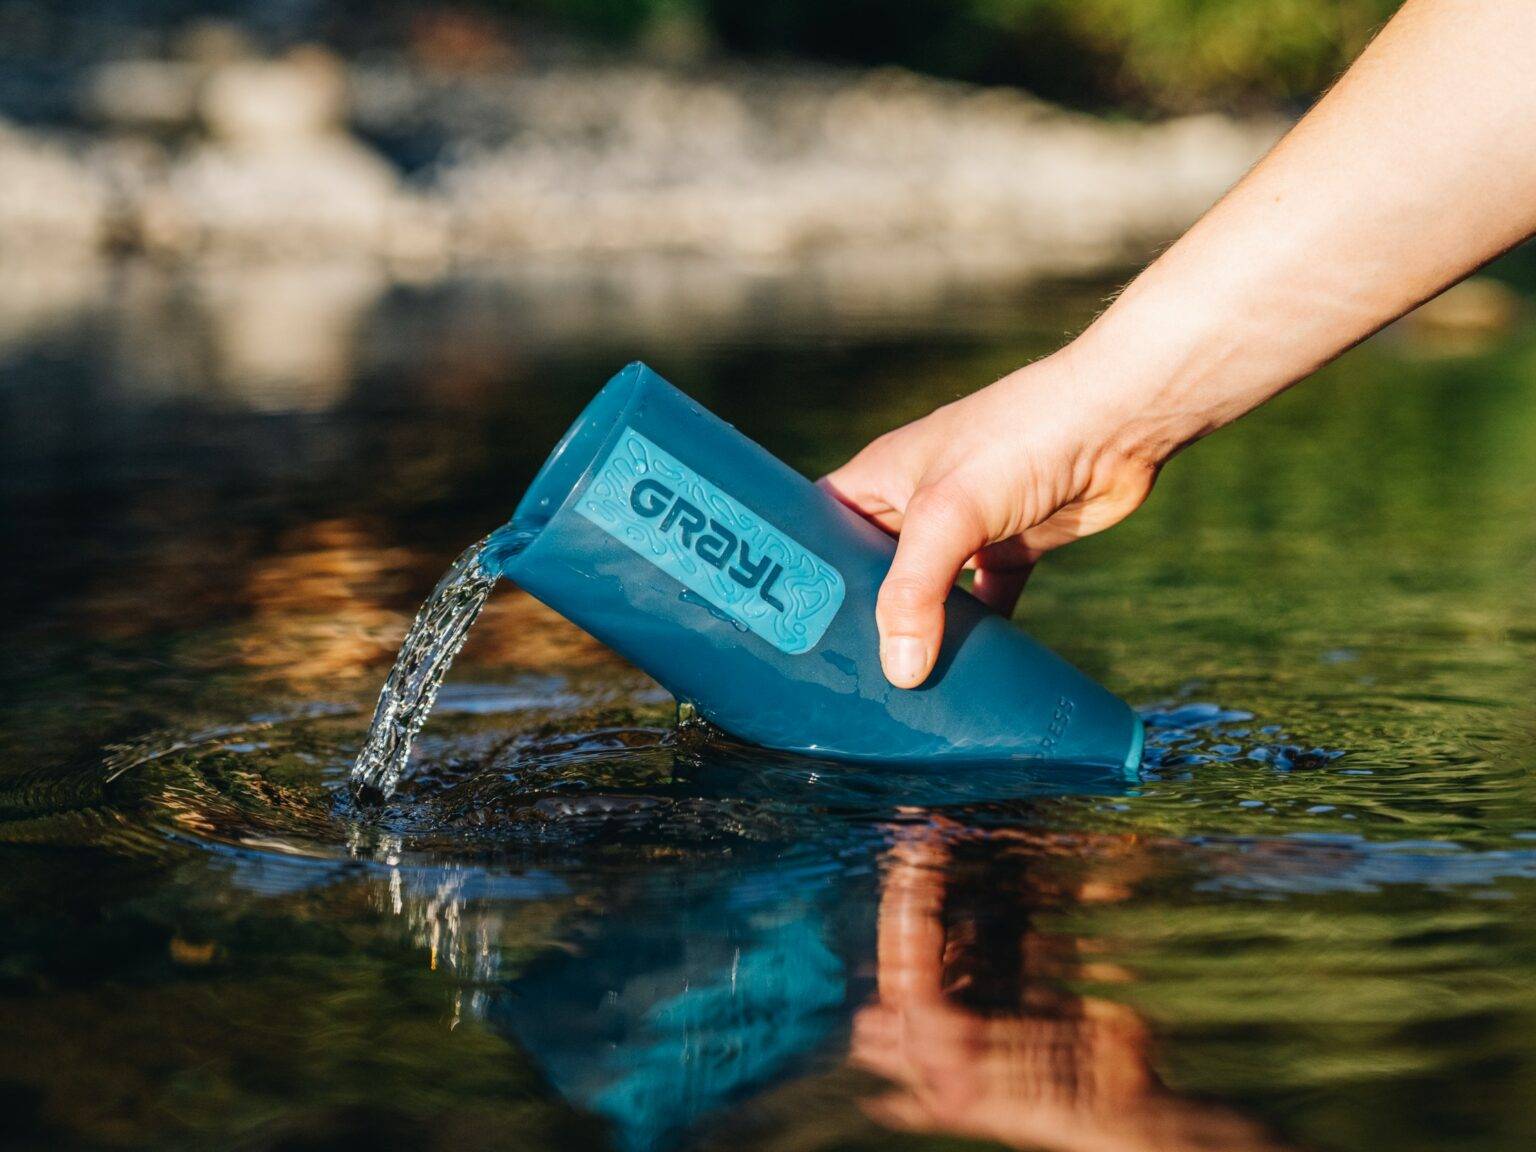 In natürlichem Gewässer lässt sich mit dem praktischen Wasserfilter von Grayl Wasser auf Reisen filtern.